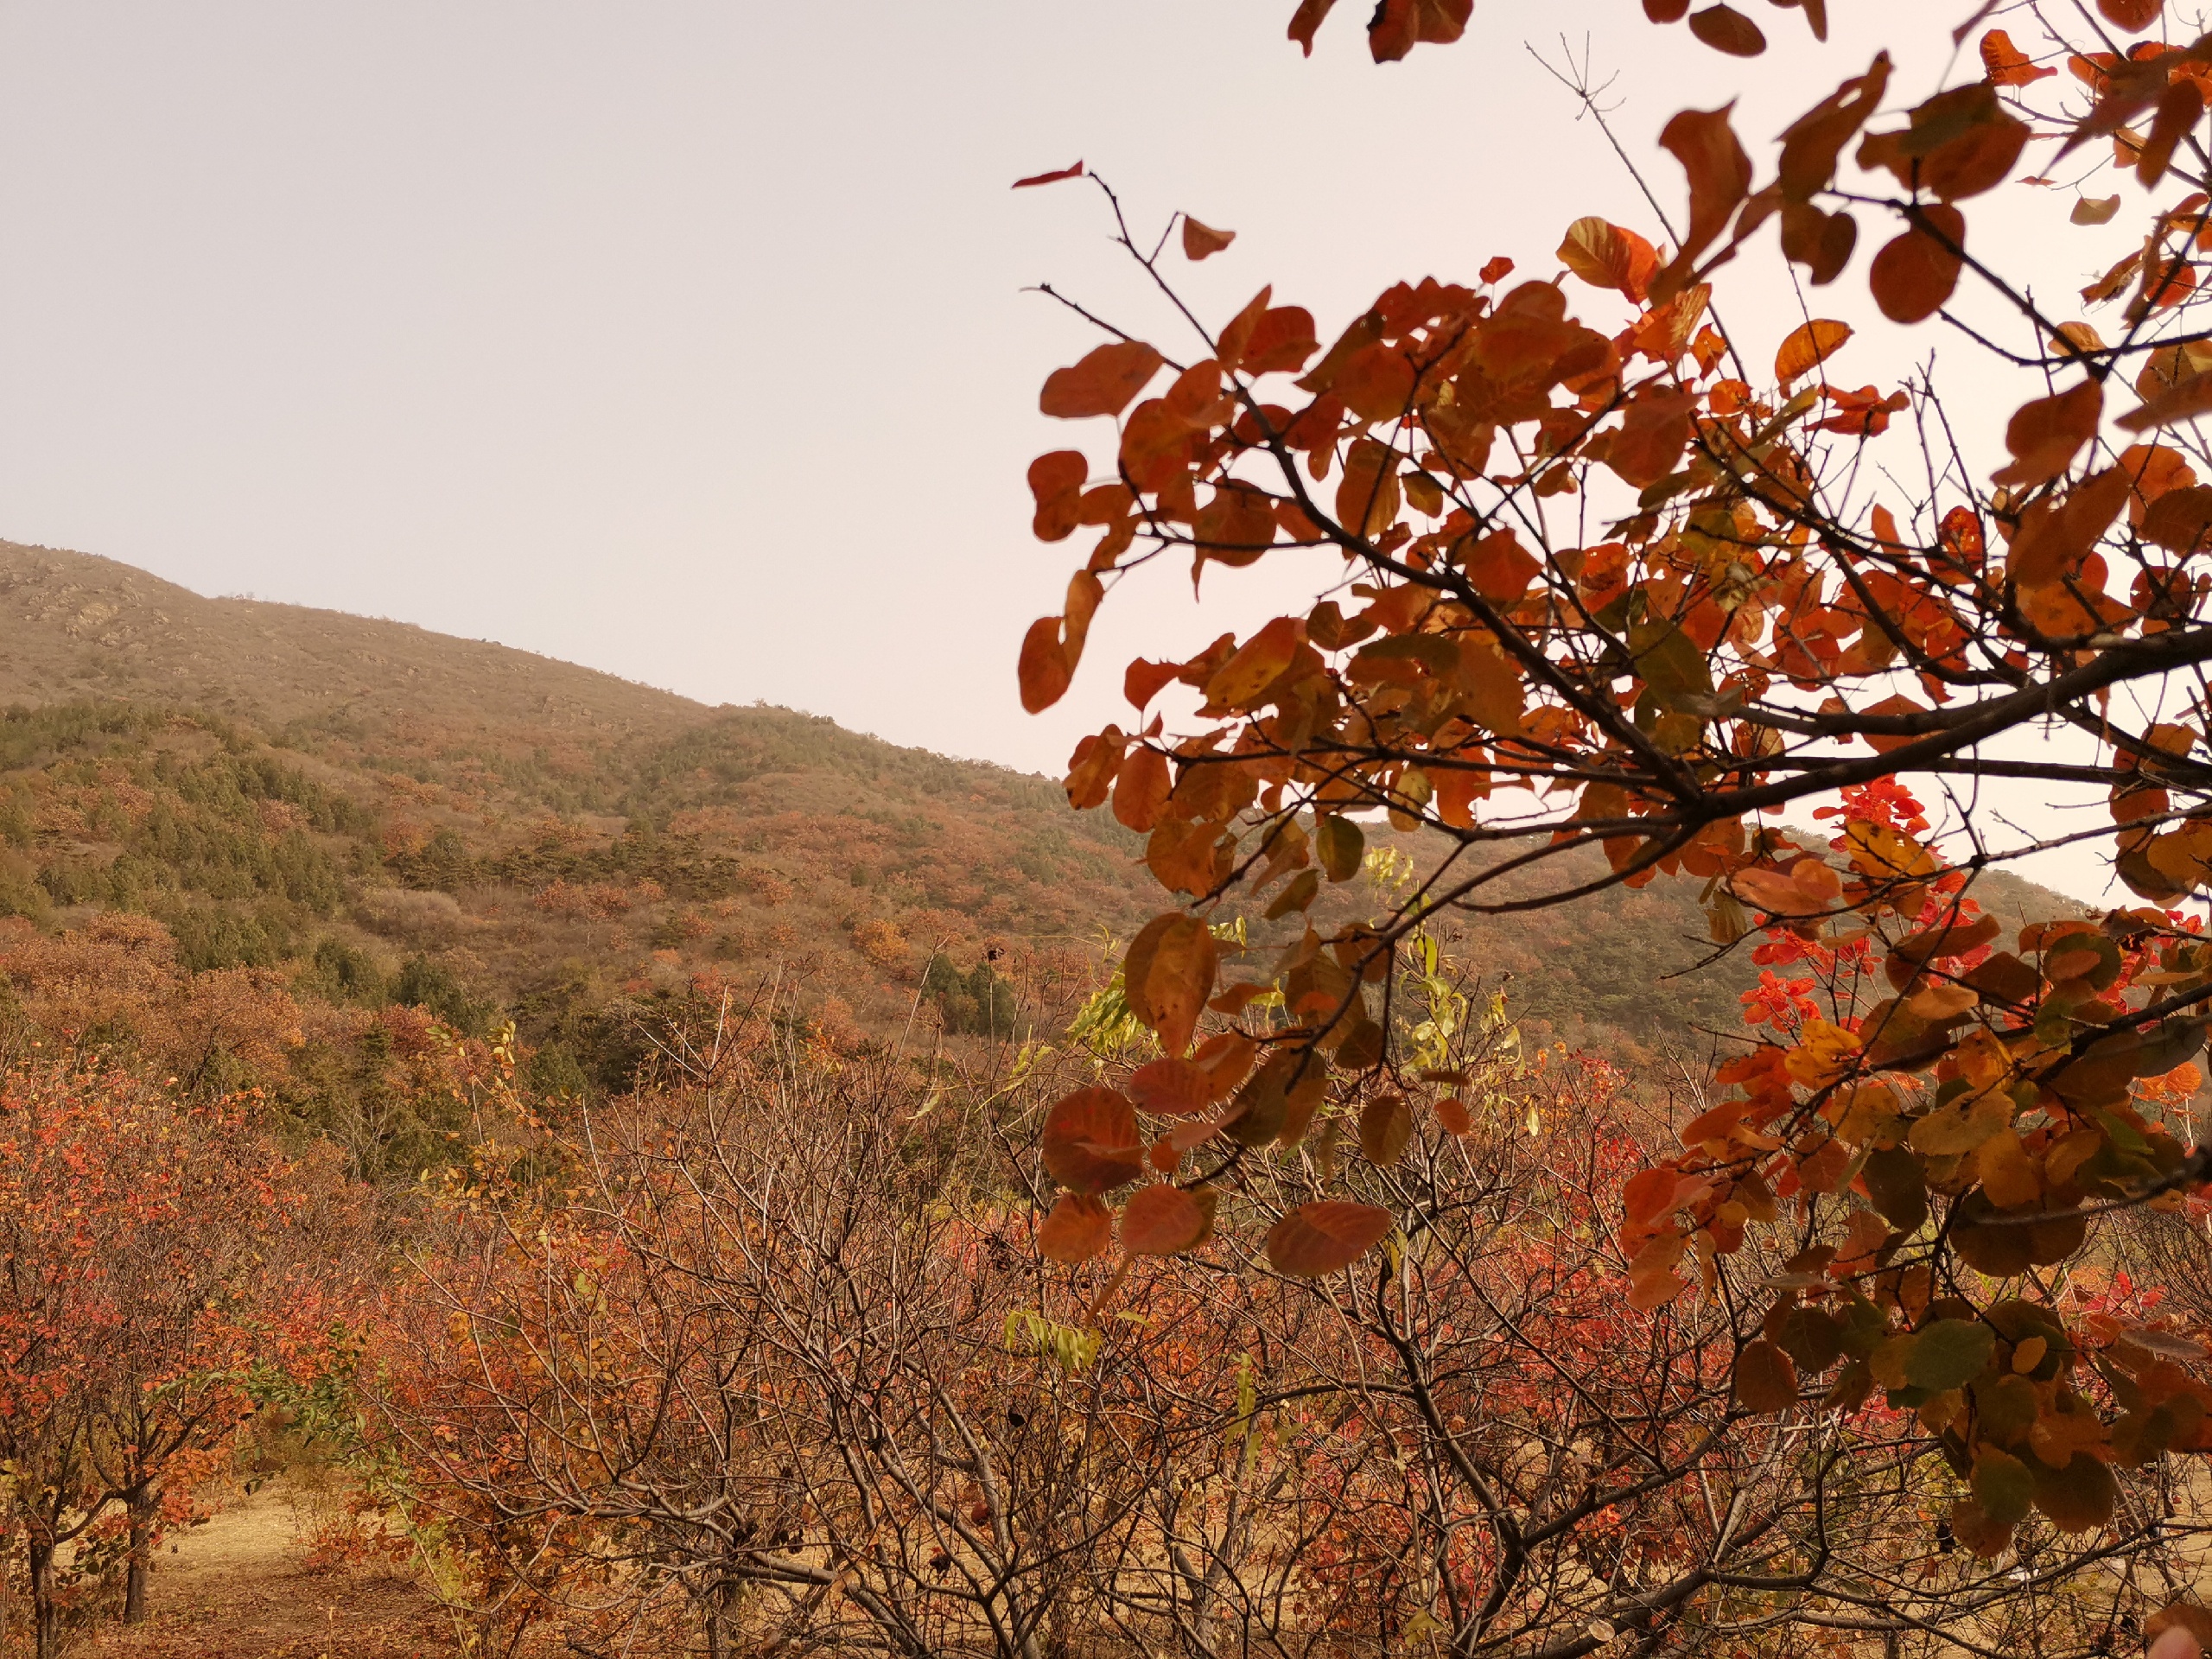 蟒山一日游 本来是想来看秋景，结果爬了一千多级台阶